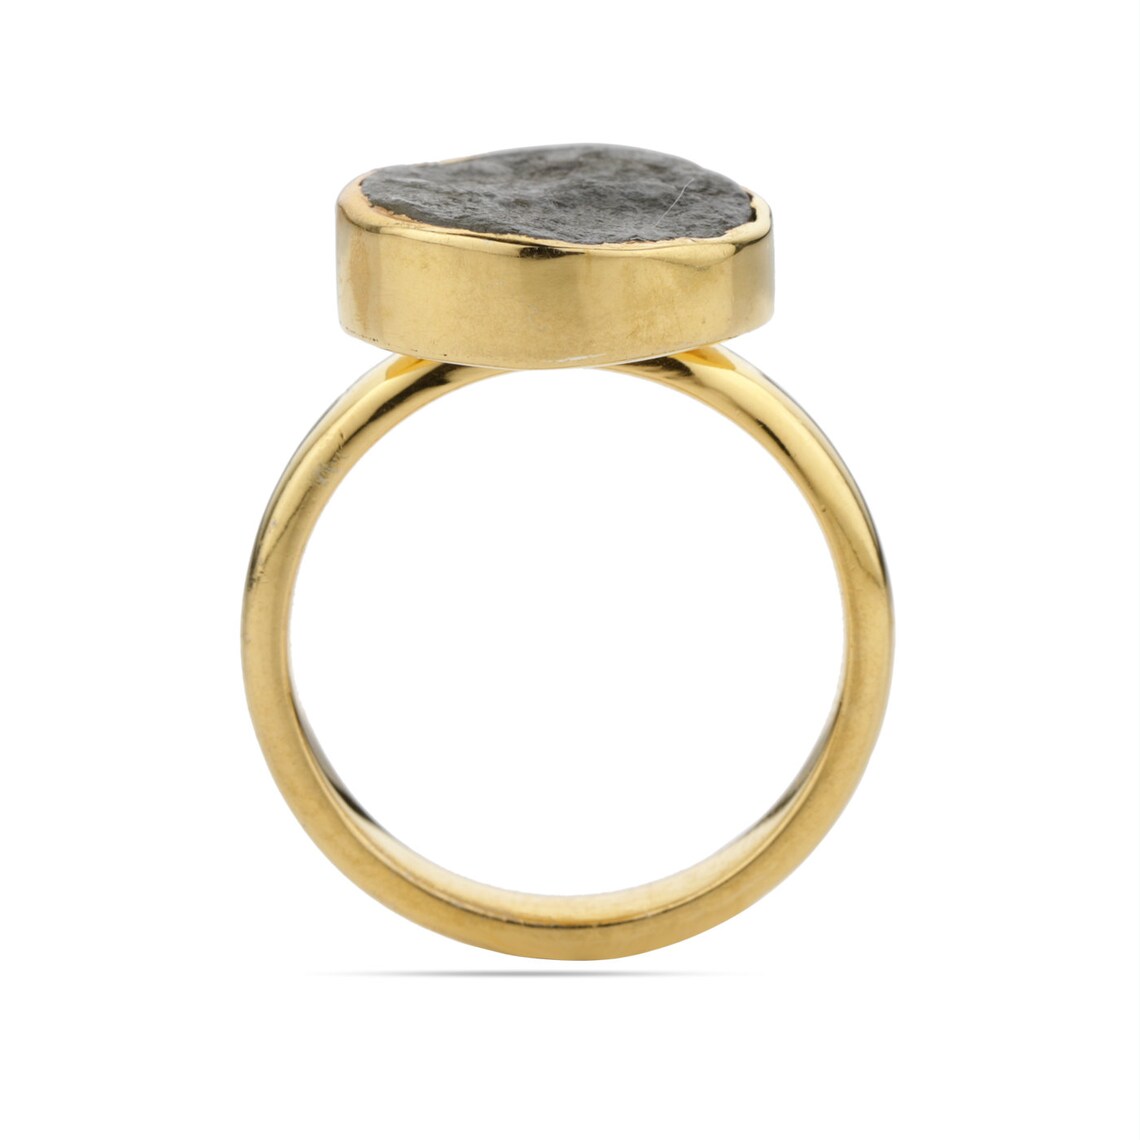 Rough Labradorite Ring - Round Labradorite Ring - Labradorite Raw Ring Rough Gemstone - Labradorite Gold Ring